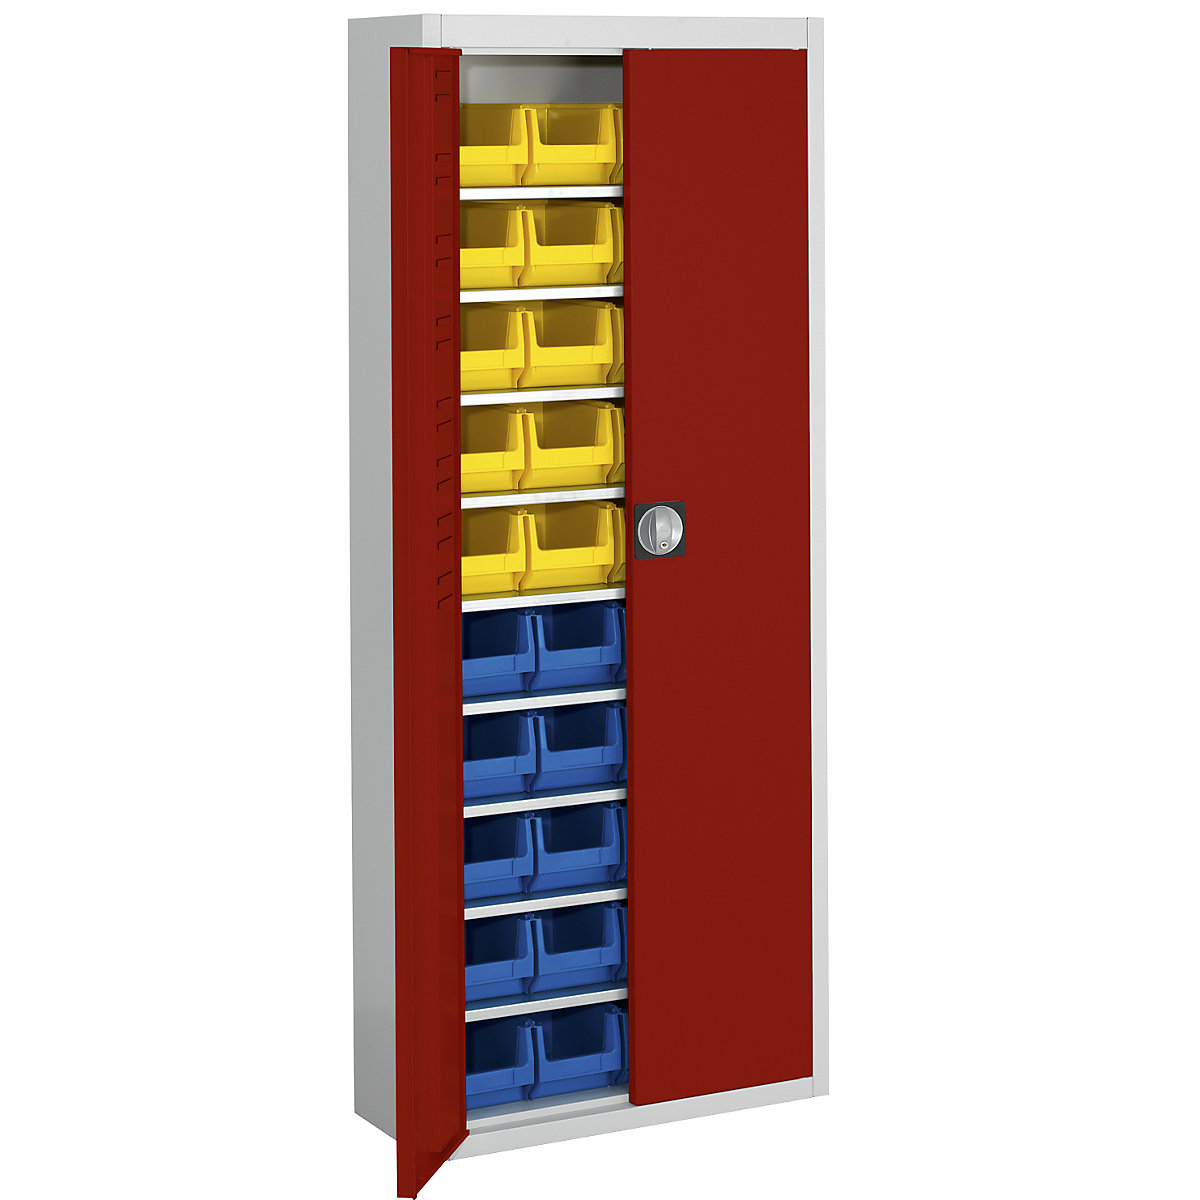 Magazijnkast met magazijnbakken – mauser, h x b x d = 1740 x 680 x 280 mm, tweekleurig, kastframe grijs, deuren rood, 40 bakken-4